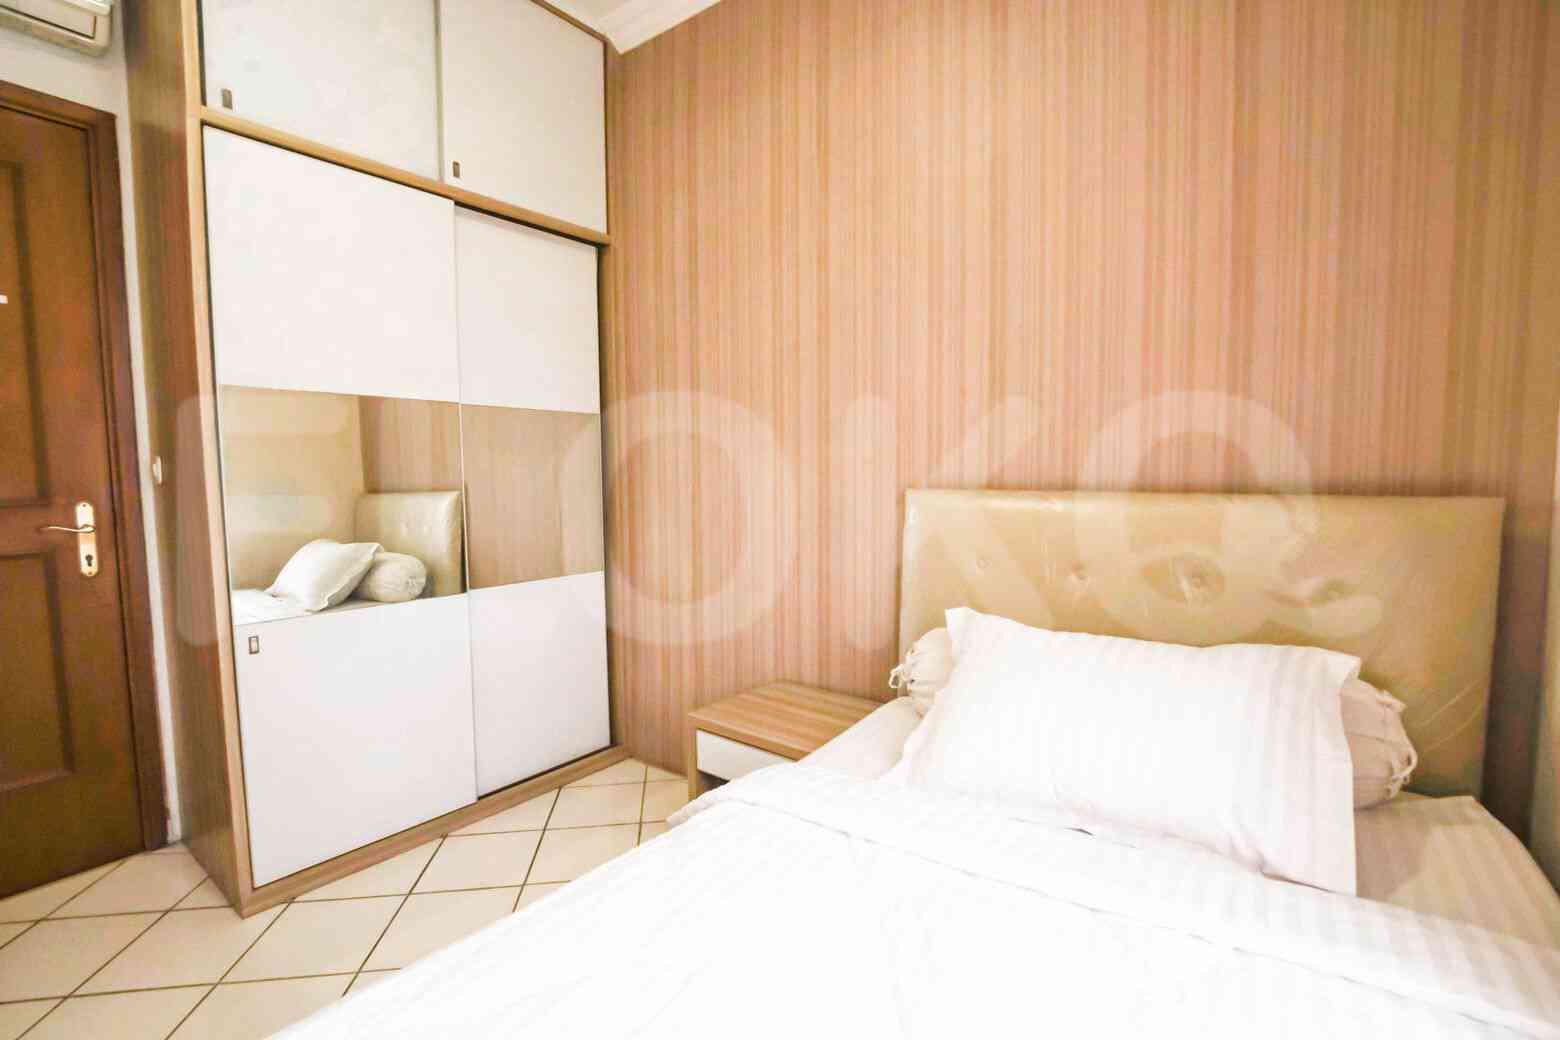 2 Bedroom on 21st Floor for Rent in Puri Casablanca - fte68b 8